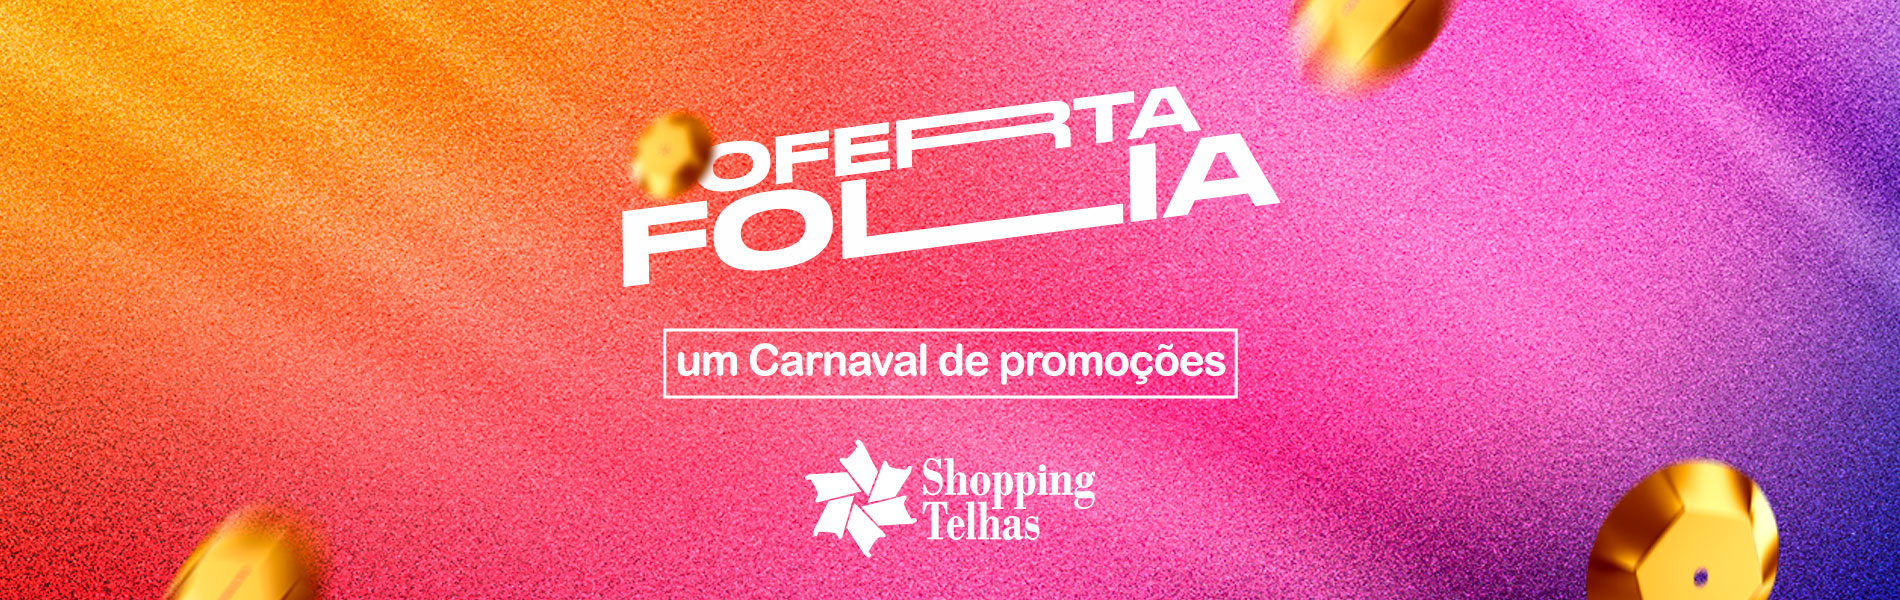 Oferta Folia Shopping Telhas